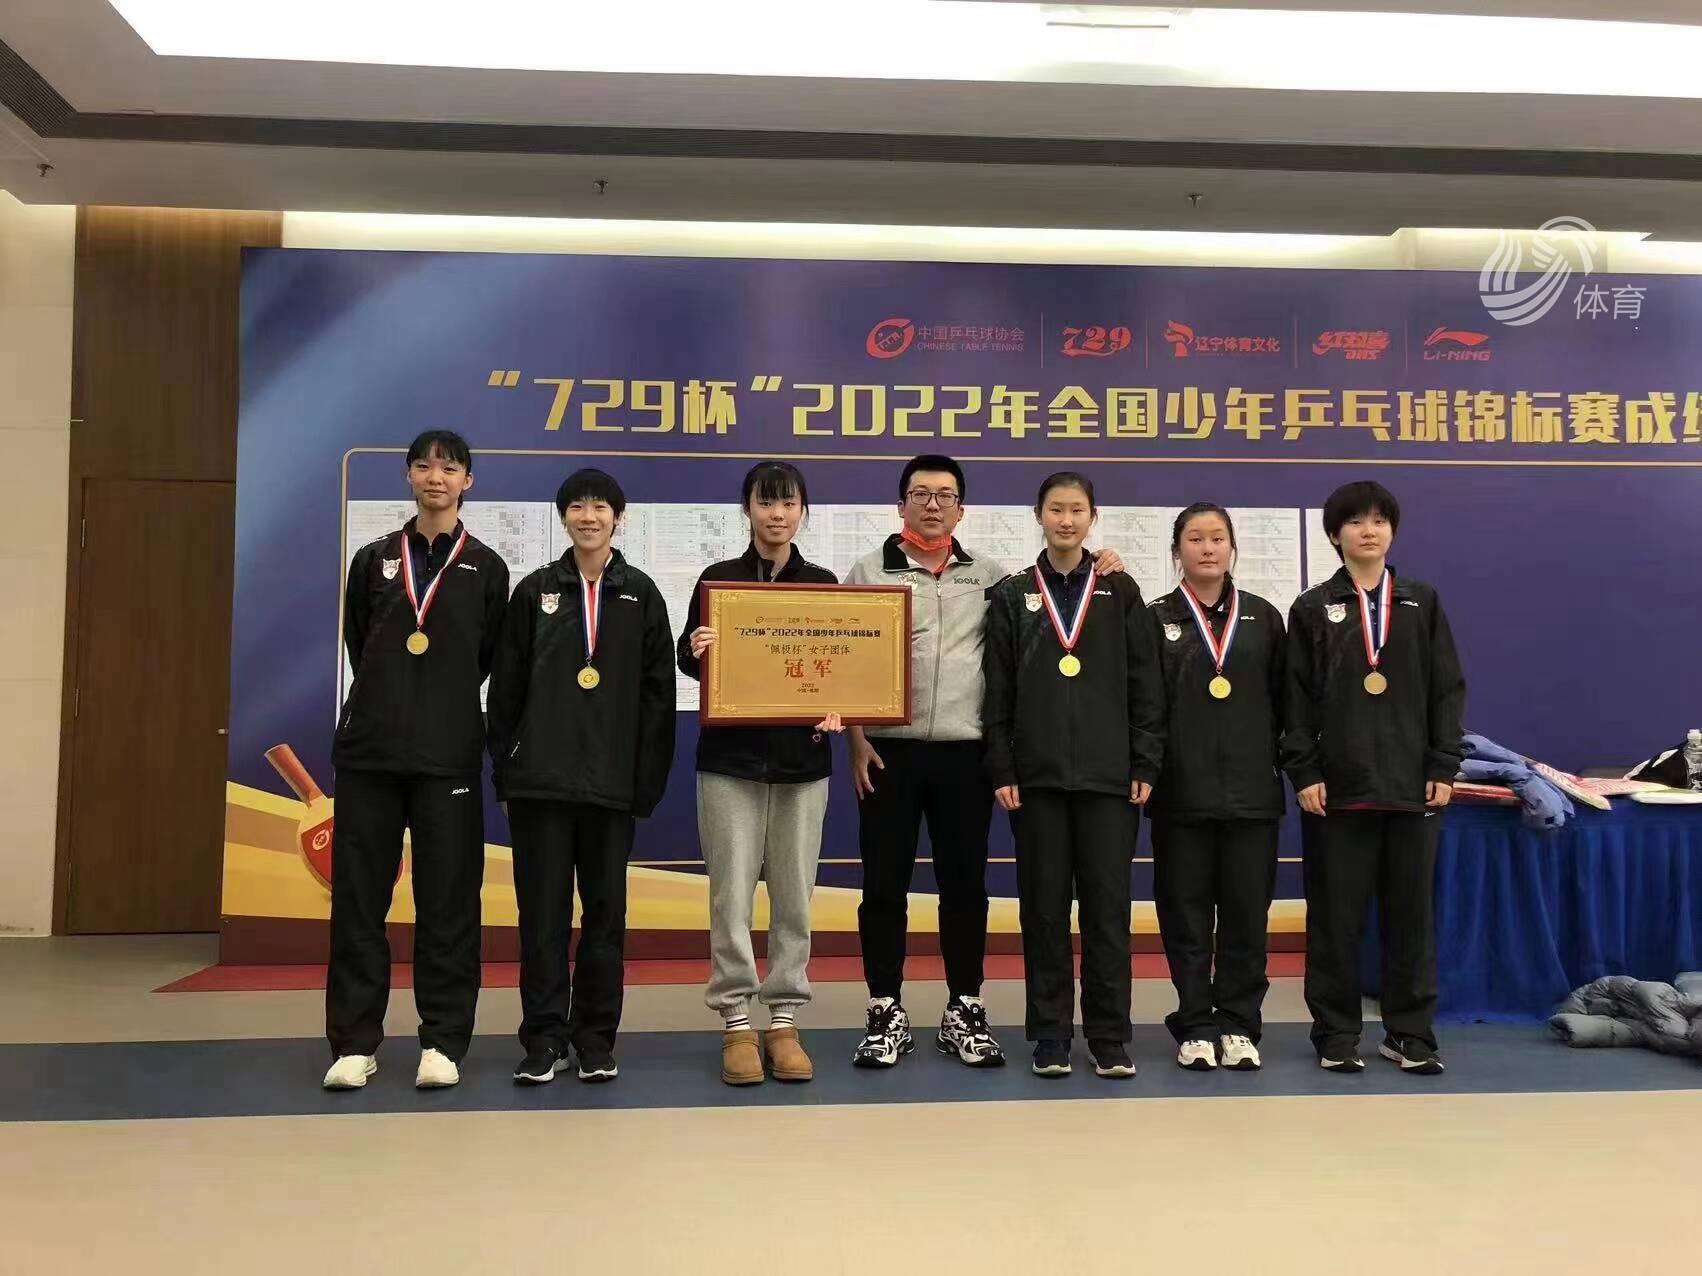 鲁能乒乓球俱乐部青训再创佳绩 勇夺全国少年乒乓球锦标赛女团冠军(2)